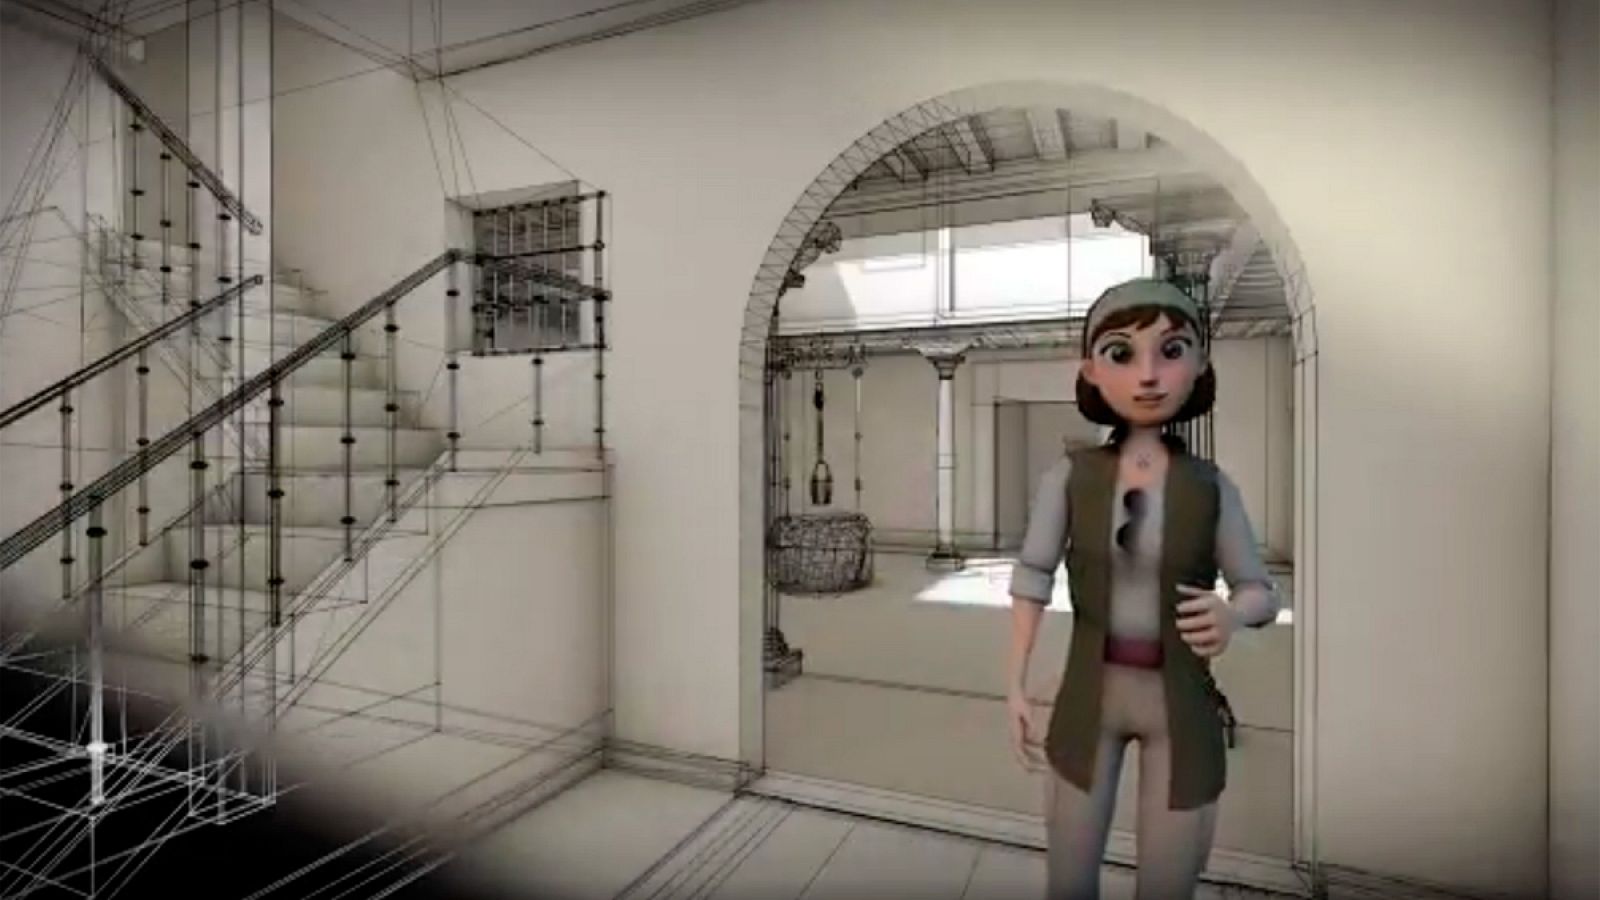 Una guía virtual, una arqueóloga del siglo XXI, acompañará a los visitantes del Museo Arqueológico Nacional.